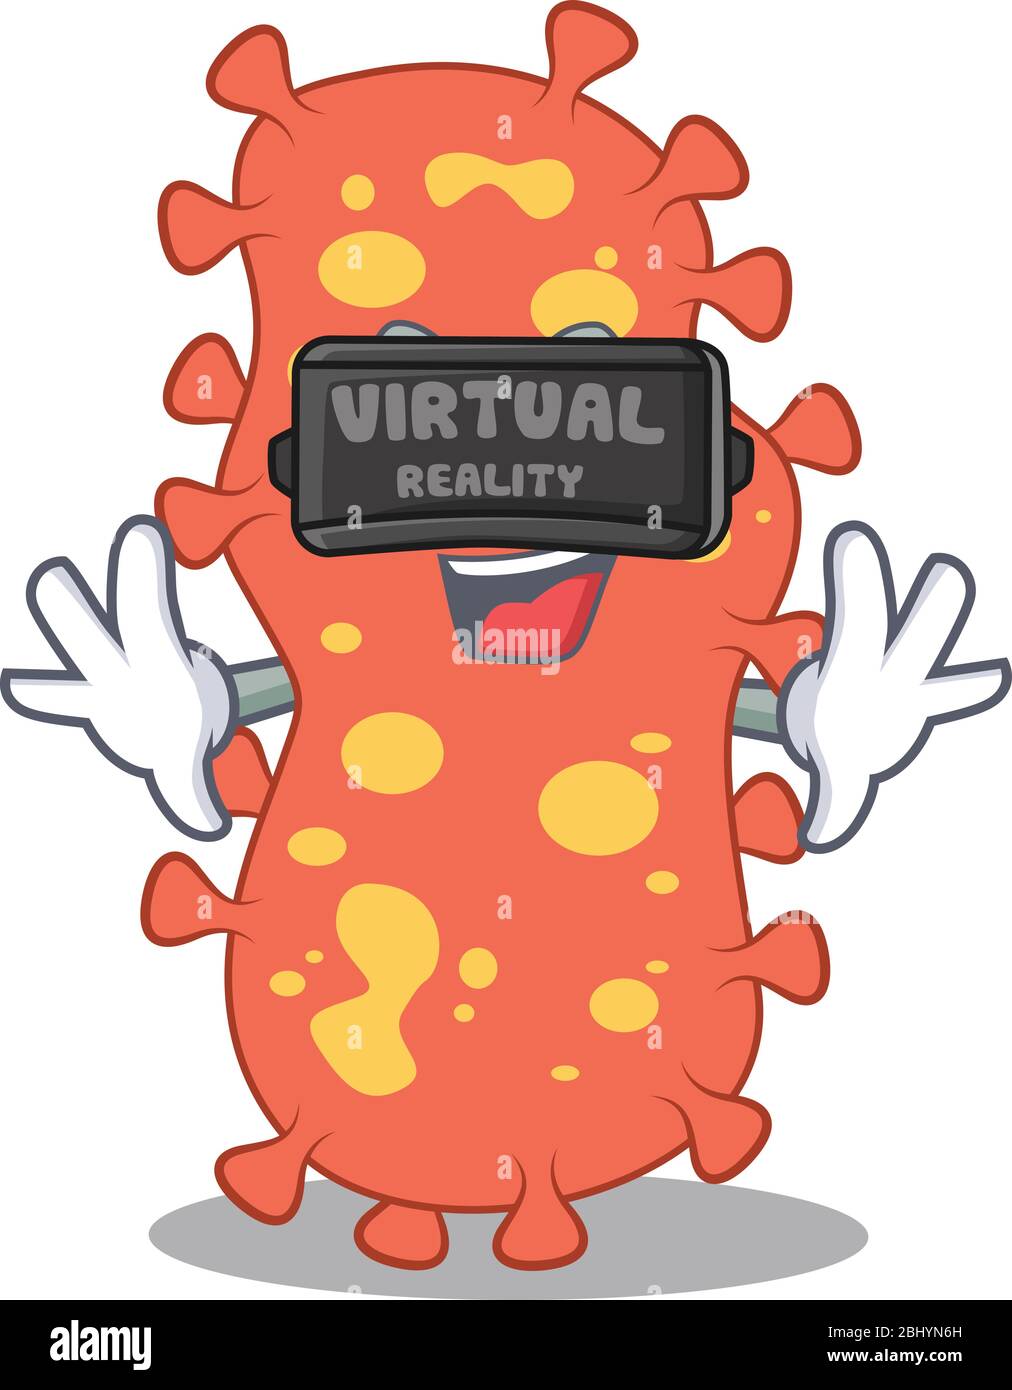 Stile di disegno dei bacteroides con un moderno visore per la realtà virtuale Illustrazione Vettoriale